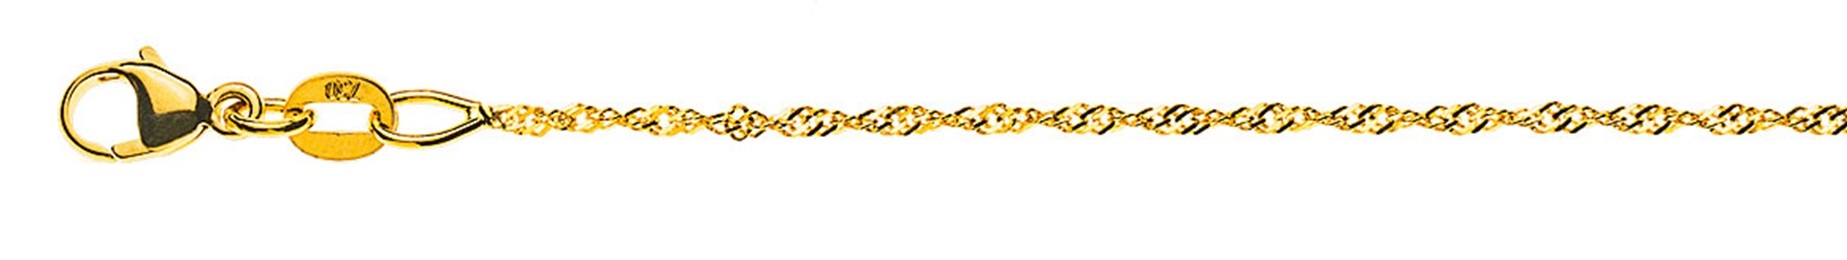 AURONOS Prestige Halskette Gelbgold 18K Singapurkette 40cm 1.2mm